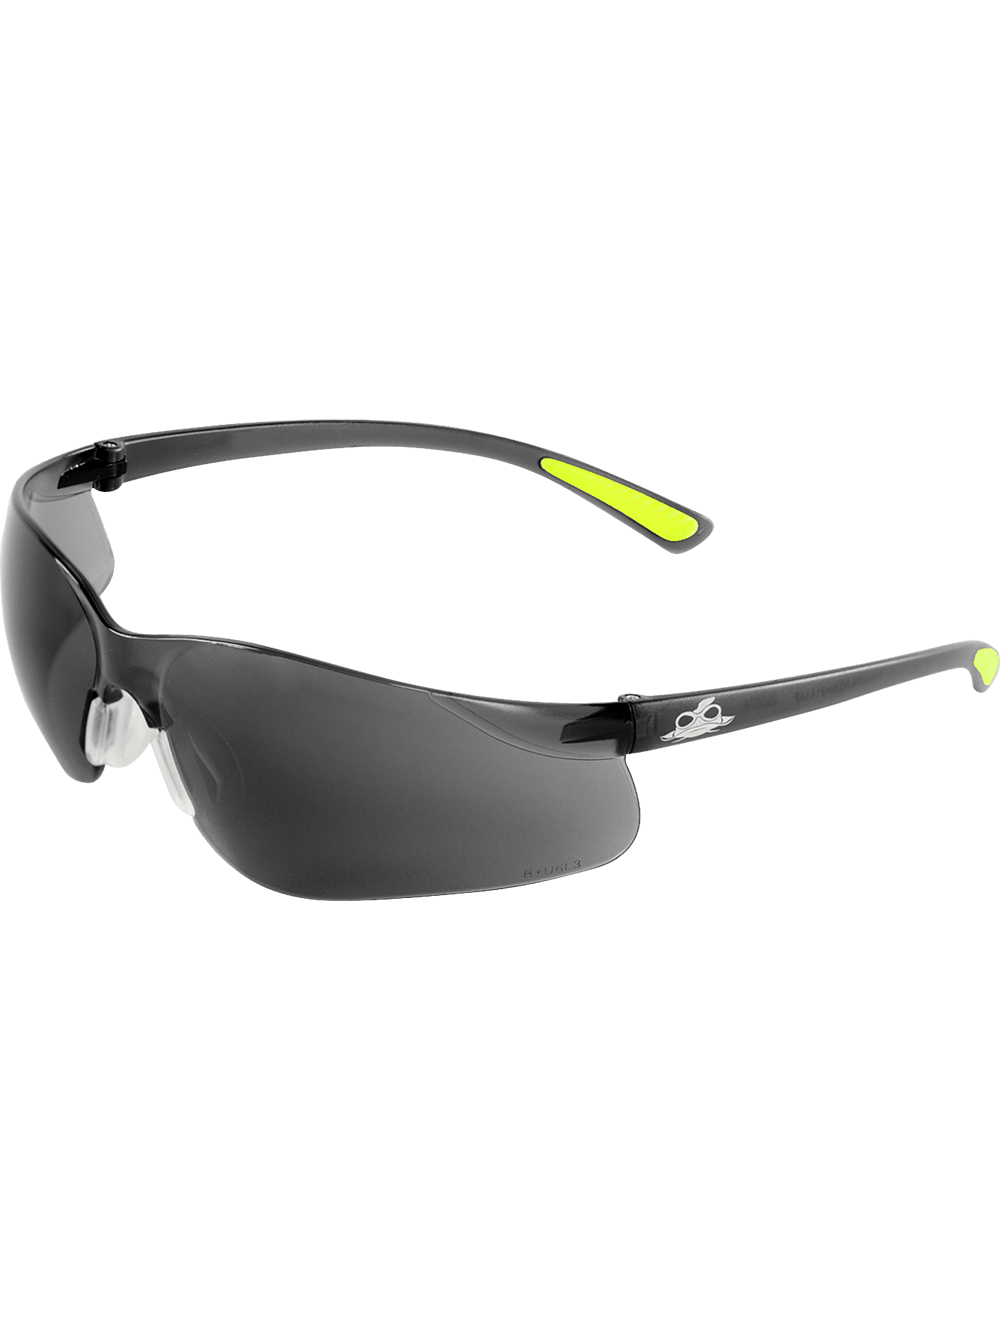 Bass™ Smoke Anti-Fog Lens, Frosted Black Frame Safety Glasses - BH2143AF